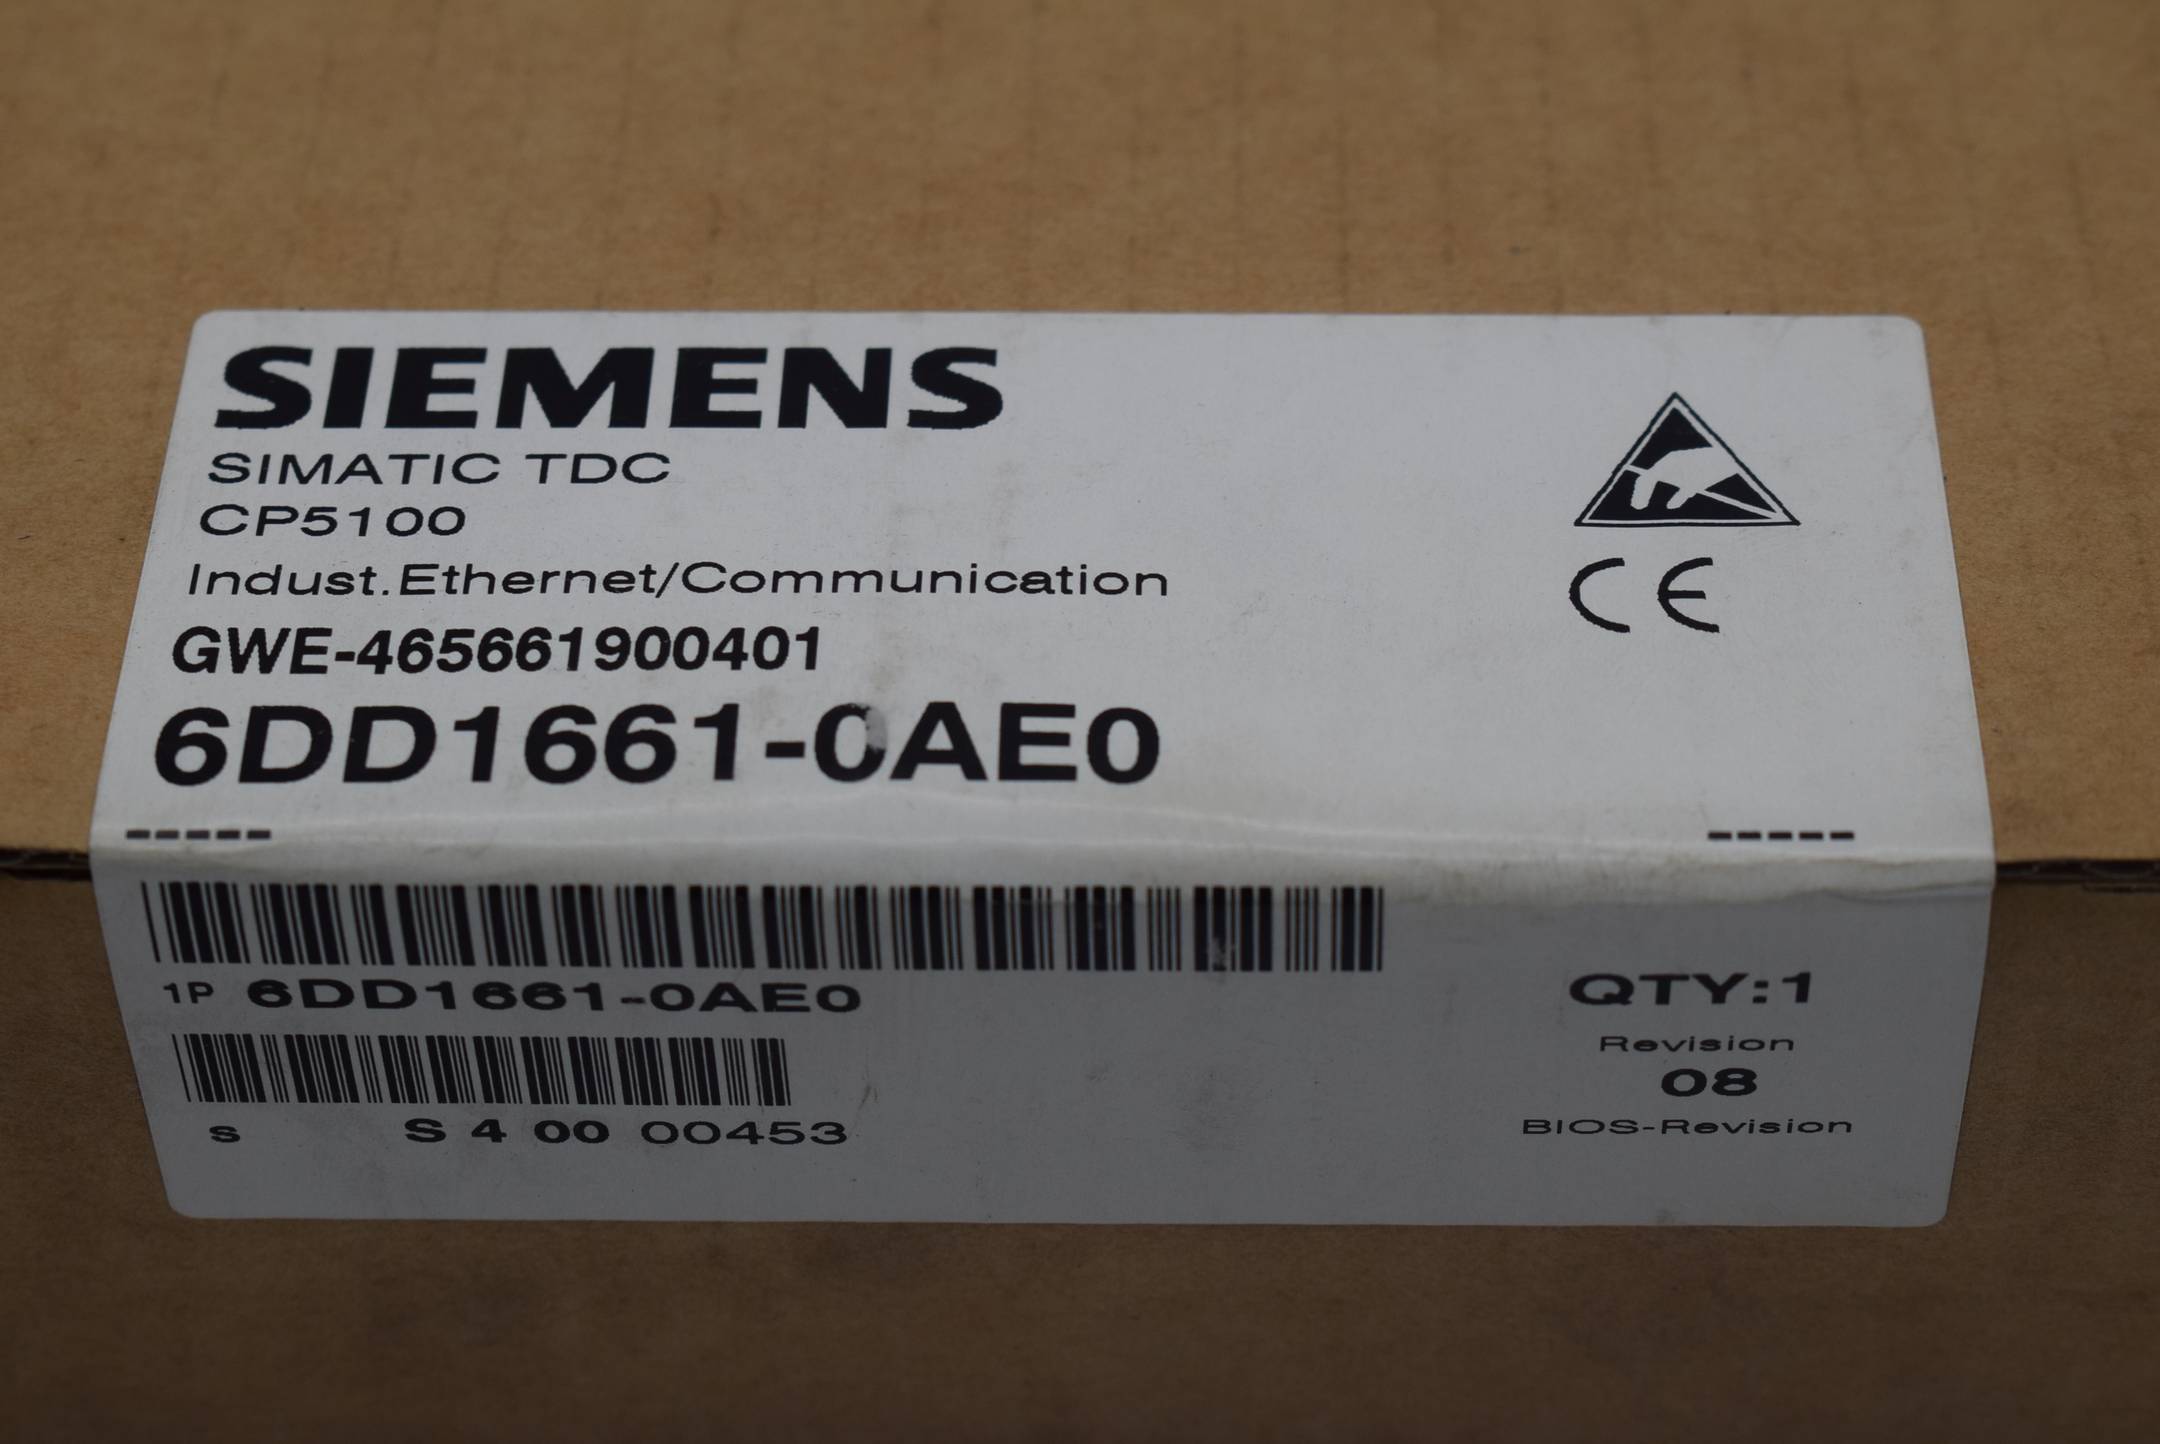 Siemens simatic TDC CP5100 6DD1661-0AE0 ( 6DD1 661-0AE0 ) Rev. 08